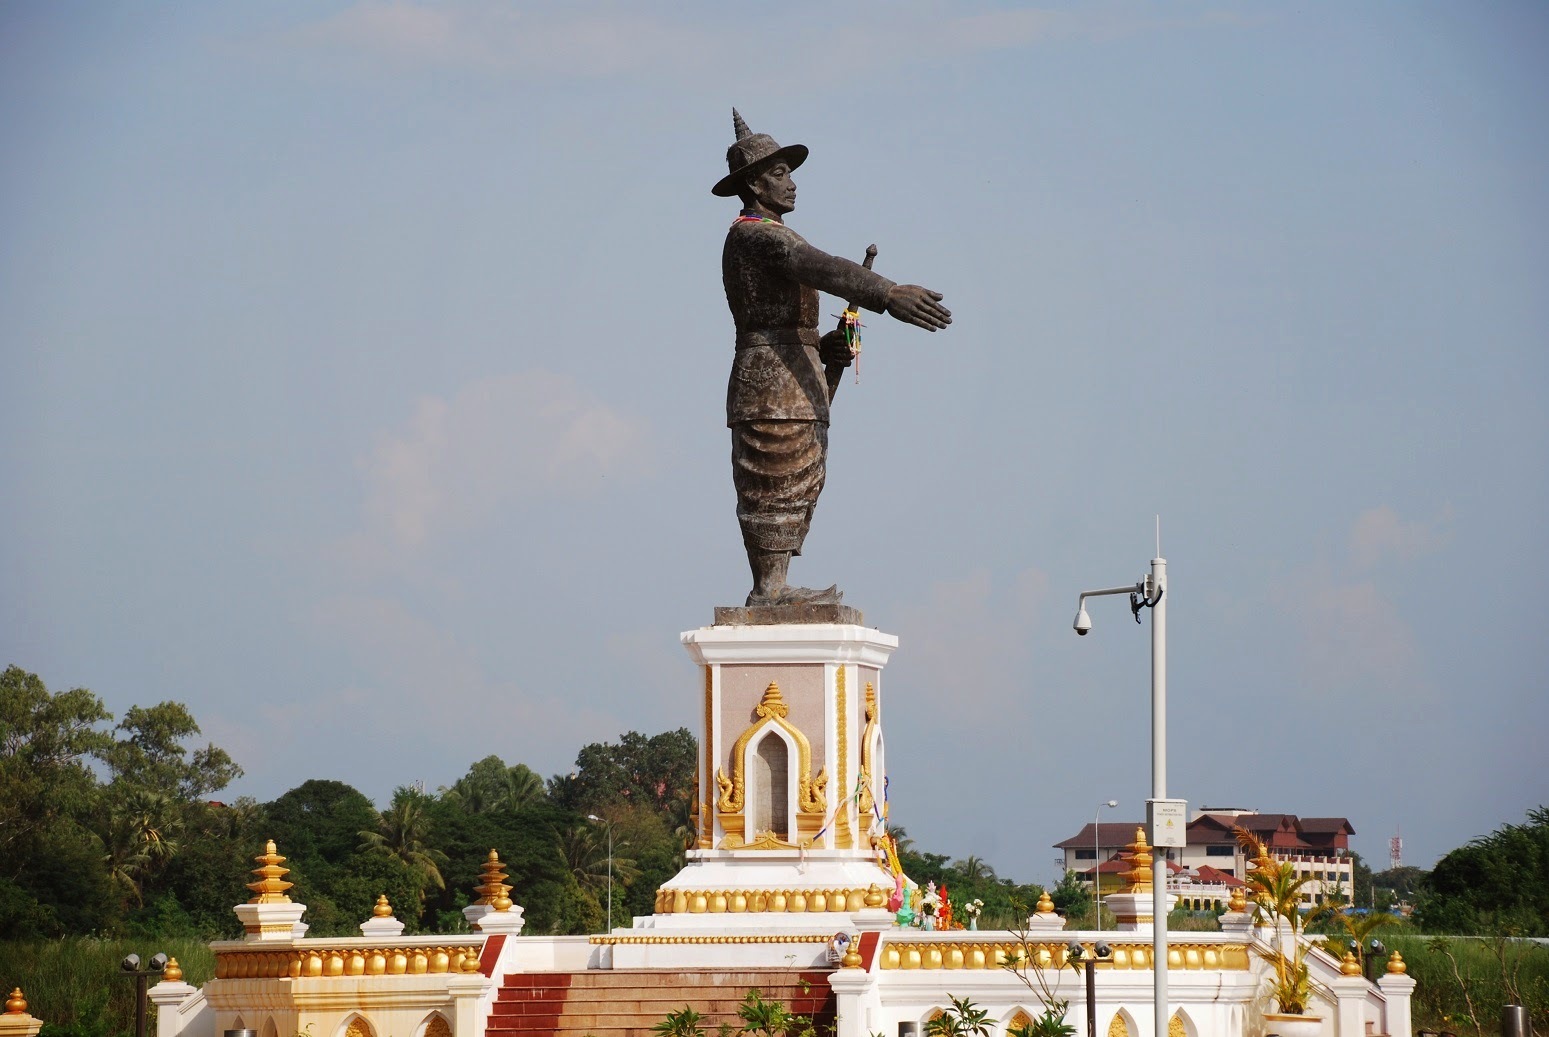 Laos - Vientiane